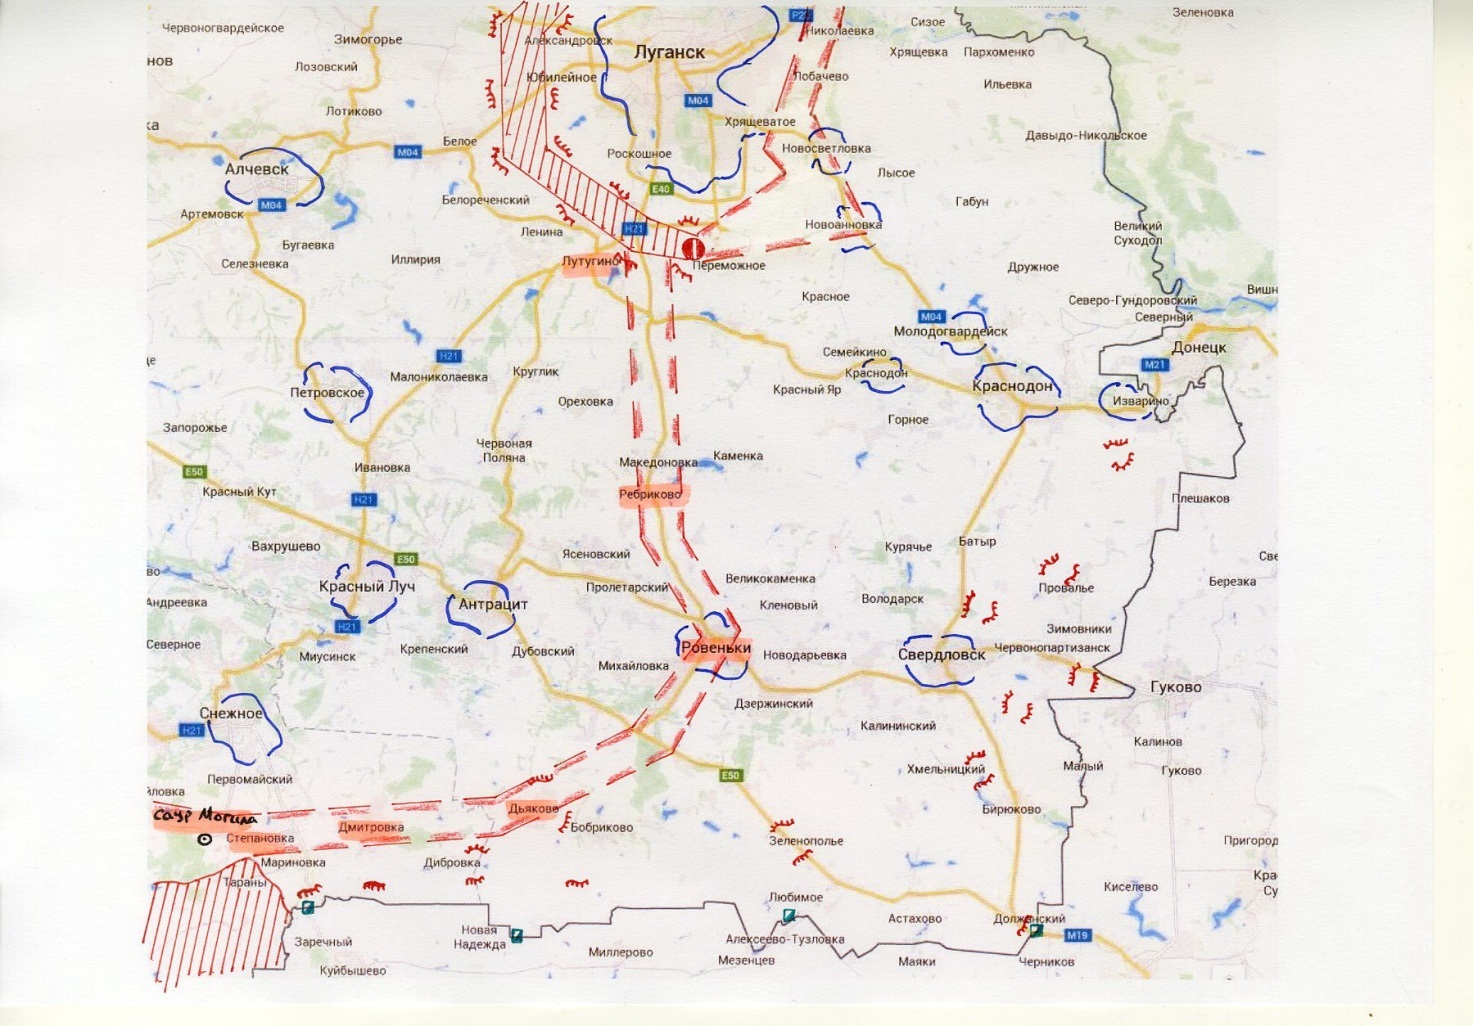 Аналіз ведення АТО та наслідків вторгнення Росії в Україну у серпні-вересні 2014 року - фото 3